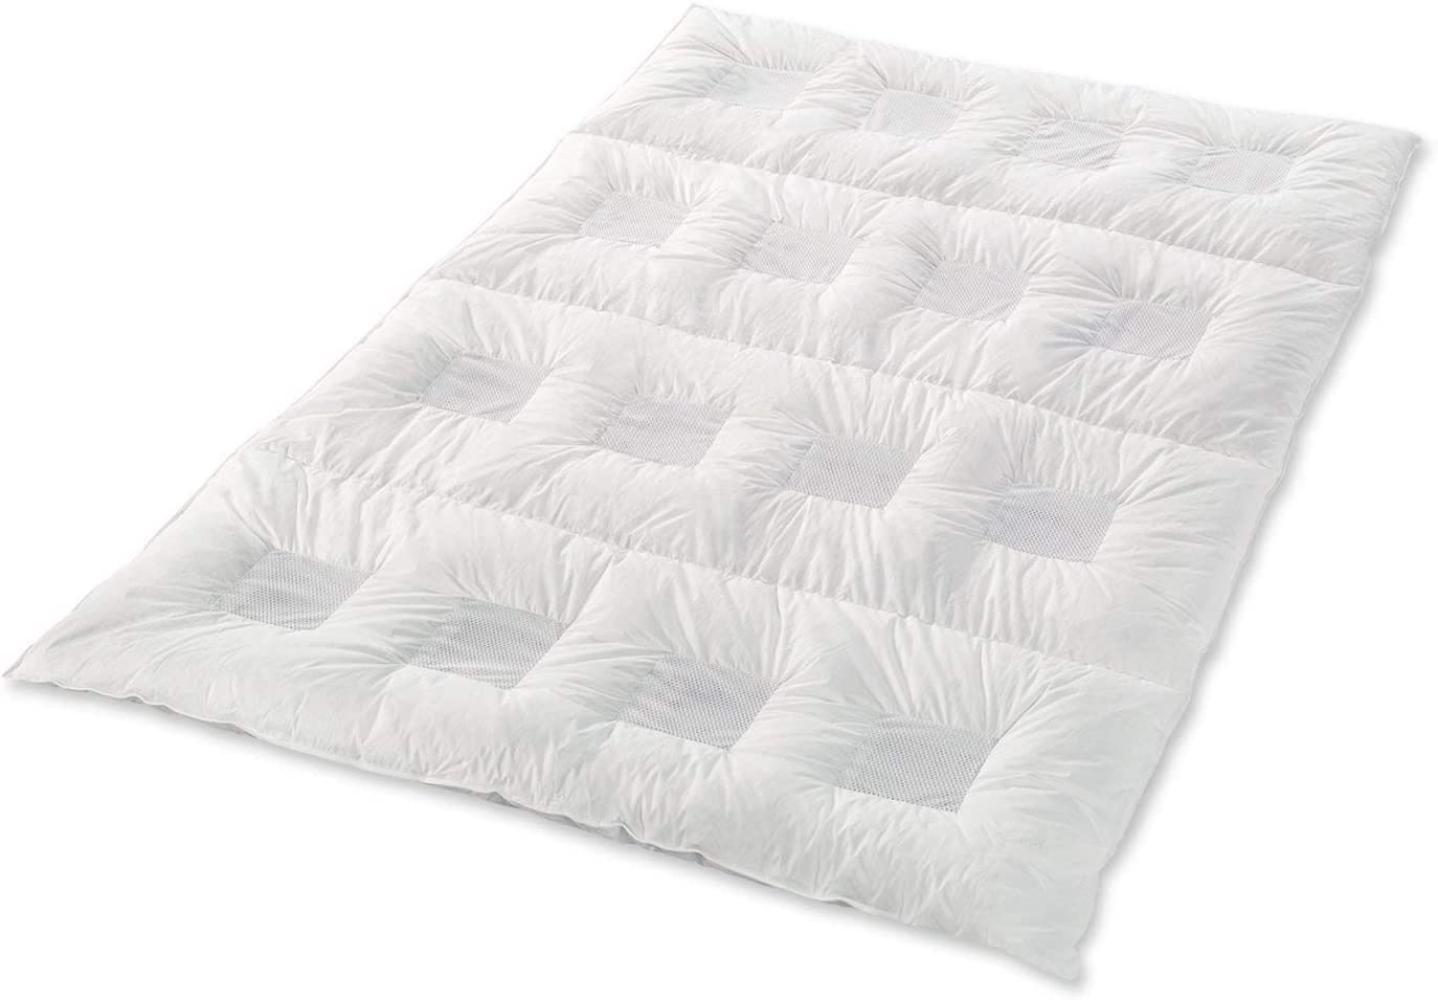 Climabalance Comfort Medium Zudecke, Baumwolle, Weiß, 135 x 200 cm Bild 1